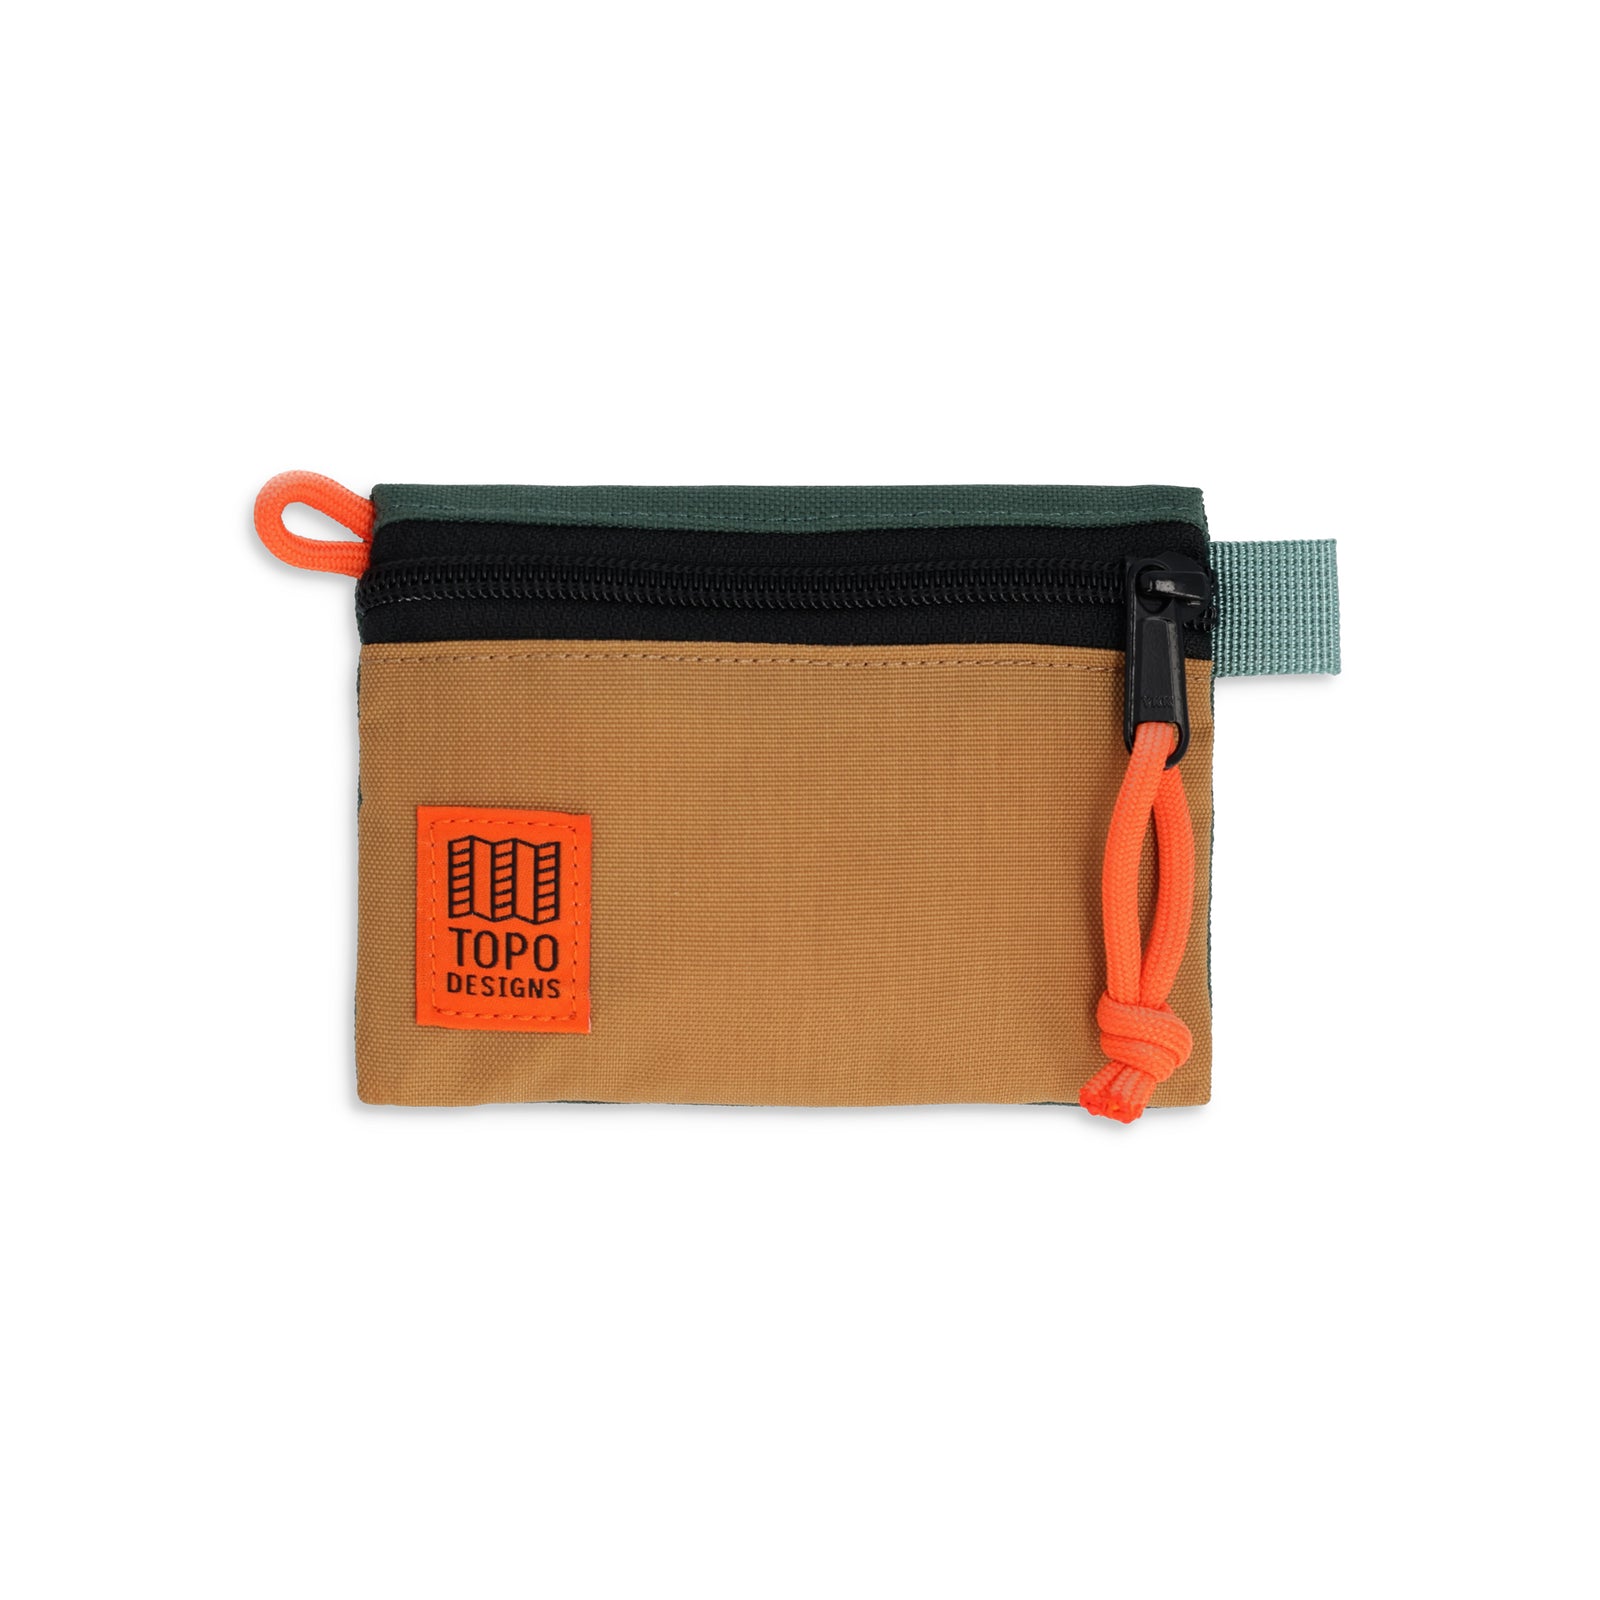 Topo Designs Accessory Bag "Micro" in "Khaki / Forest"